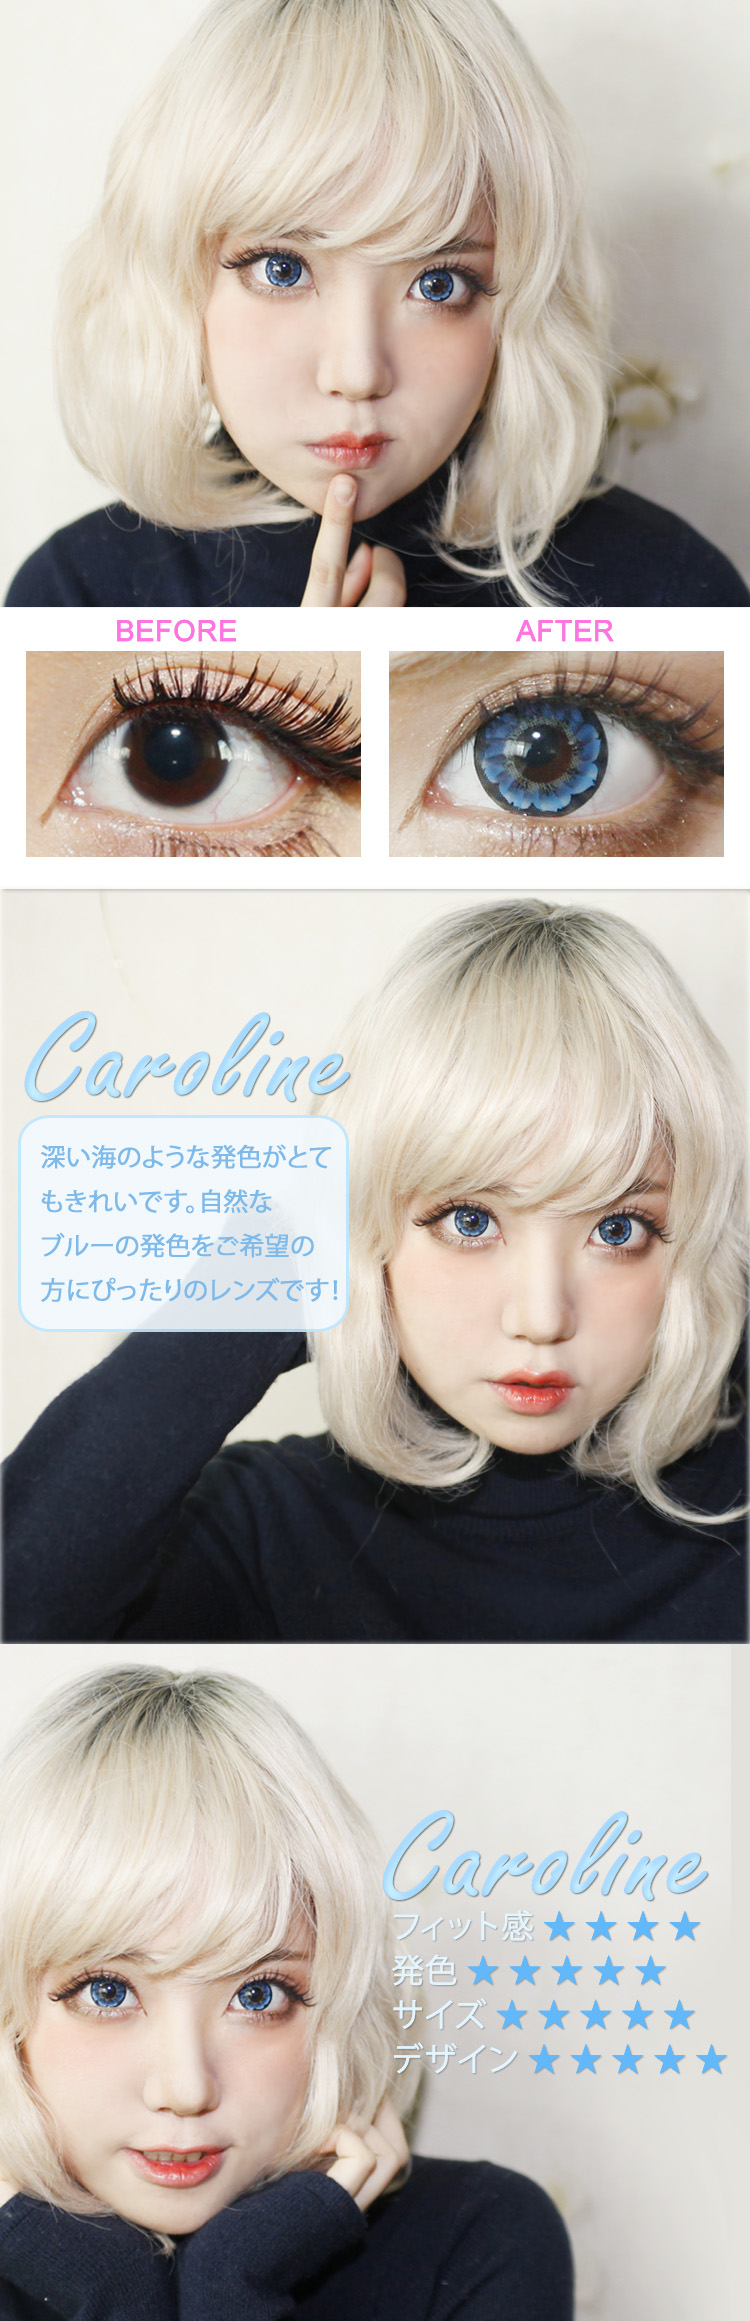 Caroline Blue (LF3) / 1218 激安カラコン